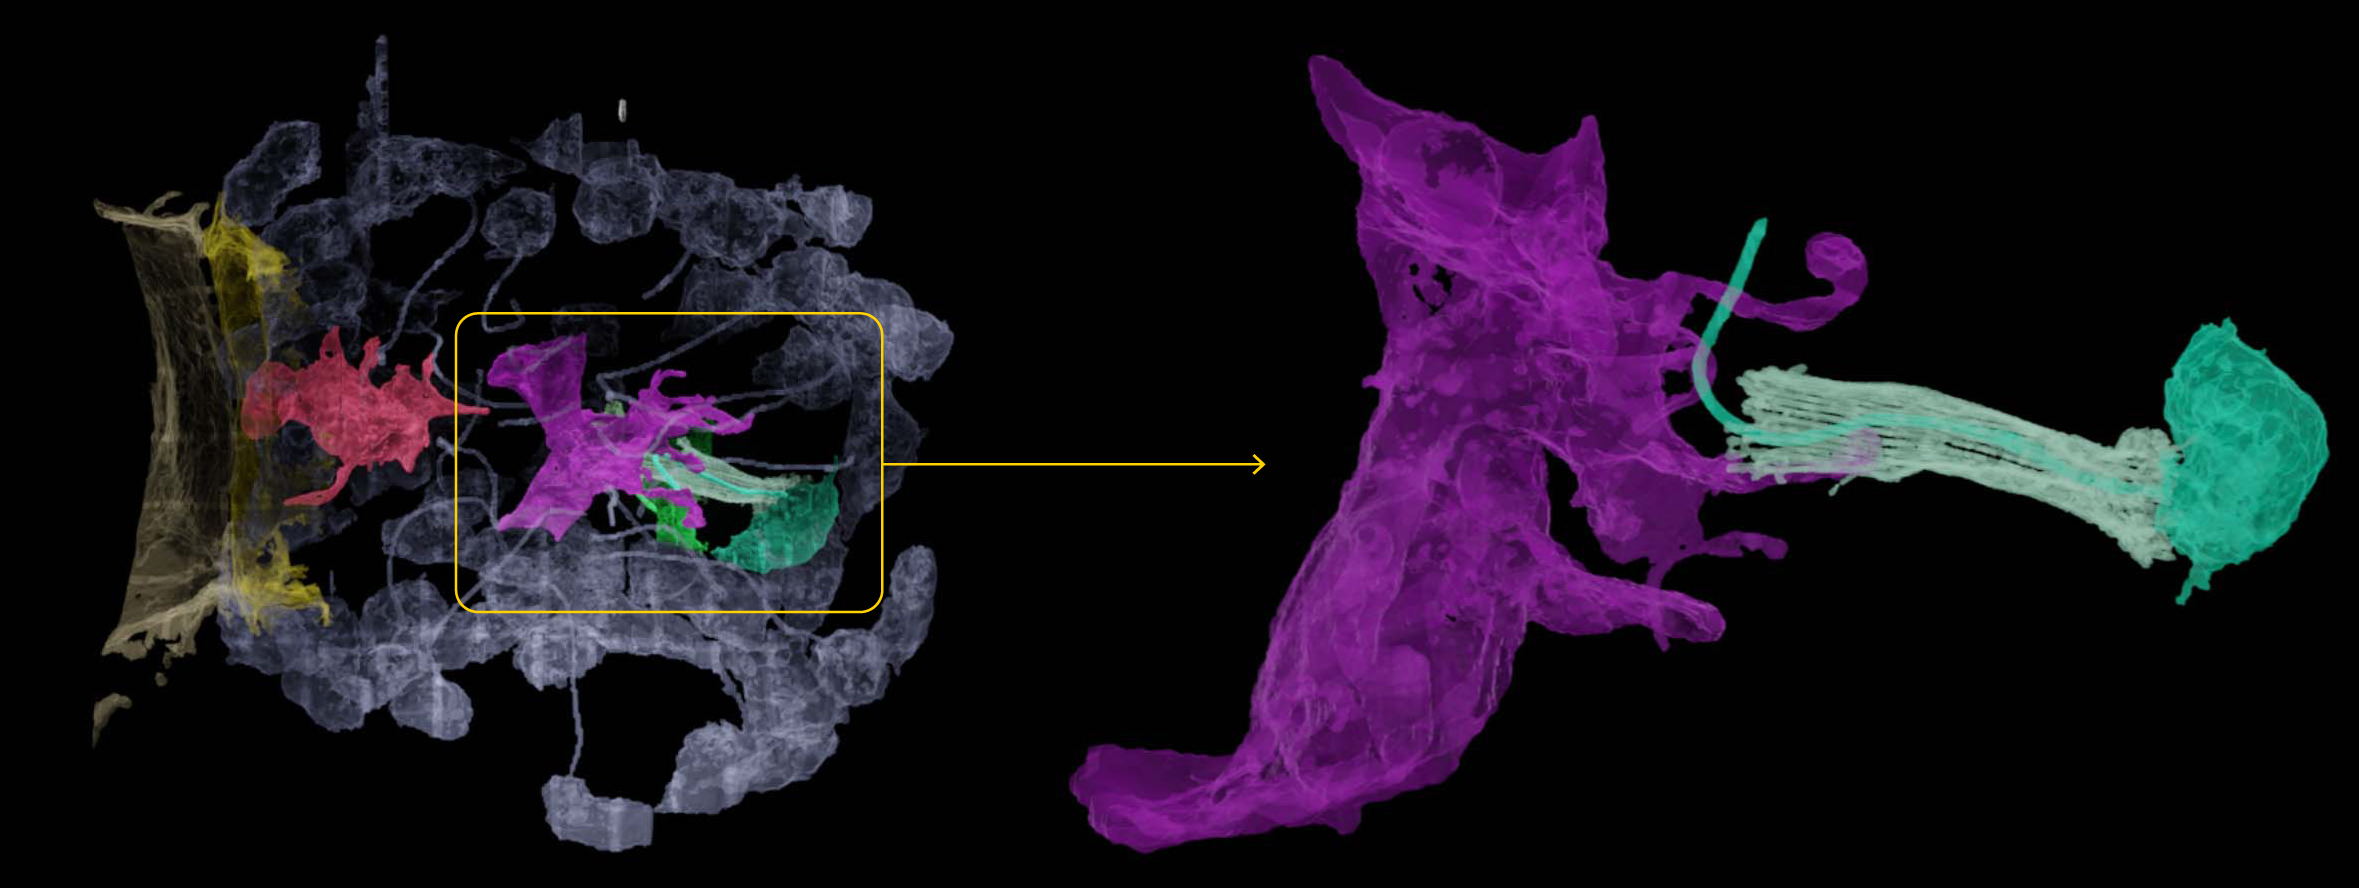 Цветная микрофотография клеток в пищеварительной камере губки (слева) показывает взаимодействие нейроидной клетки (пурпурная) с хоаноцитом (зелёный). В увеличенном виде (справа) преходящий контакт между двумя клетками может свидетельствовать о синаптическом контакте между нейронами.